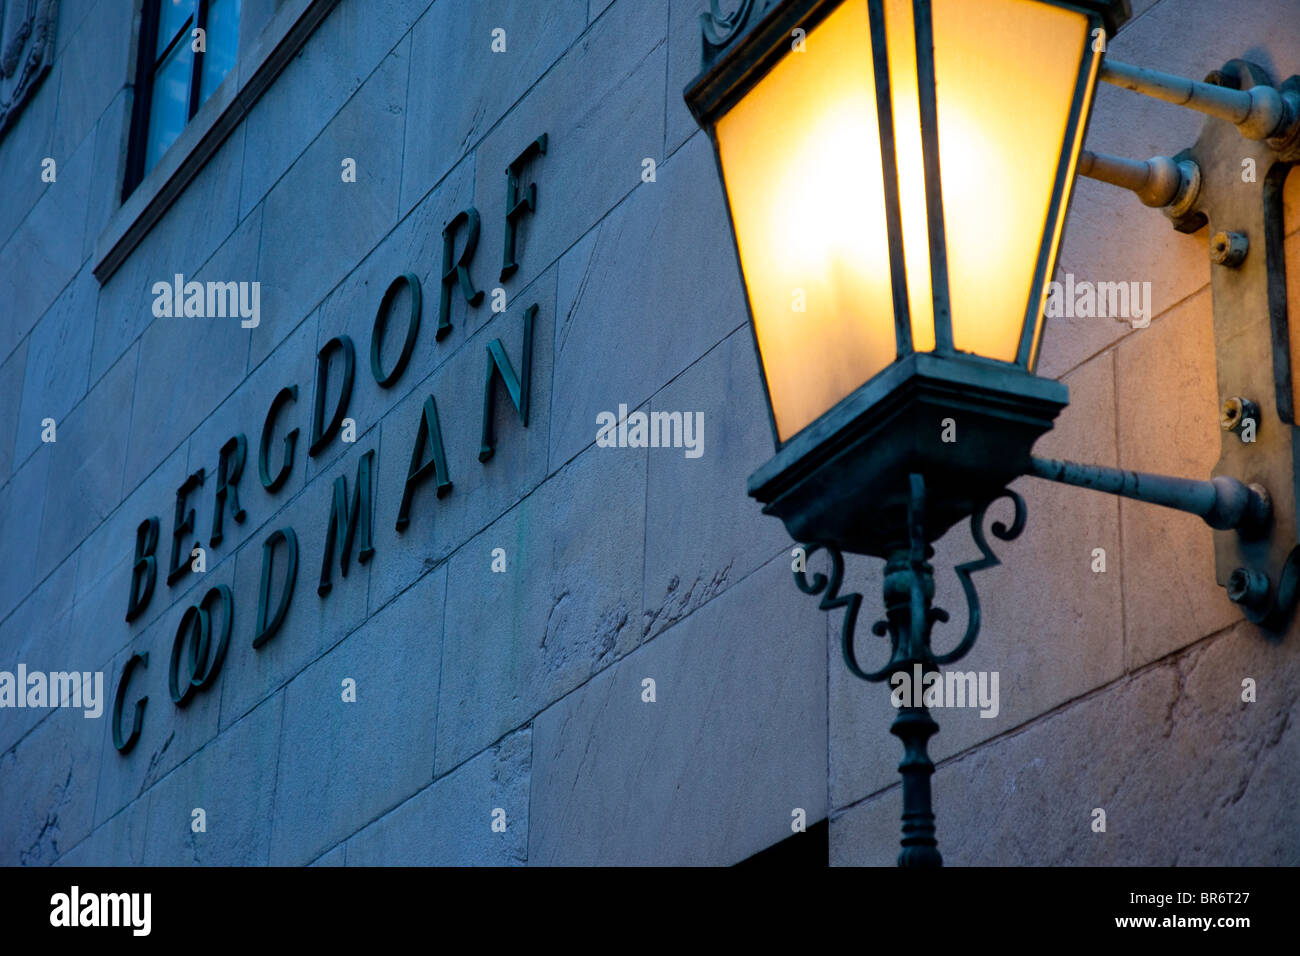 Am Abend auf das Bergdorf Goodman Gebäude in Manhattan, New York City USA Stockfoto